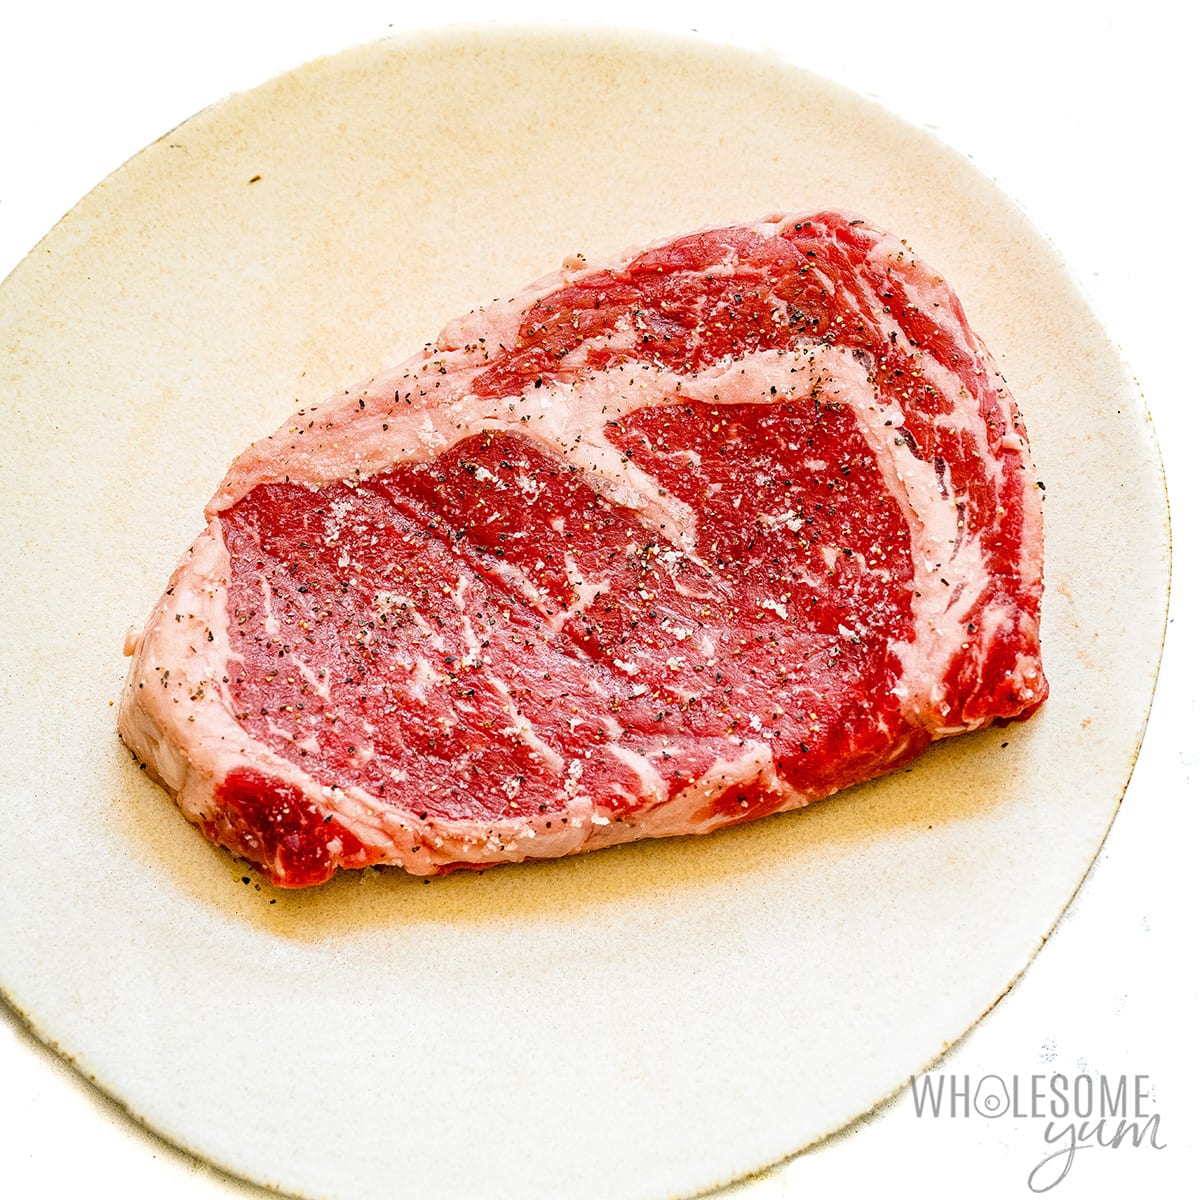 Raw seasoned steak on a plate.